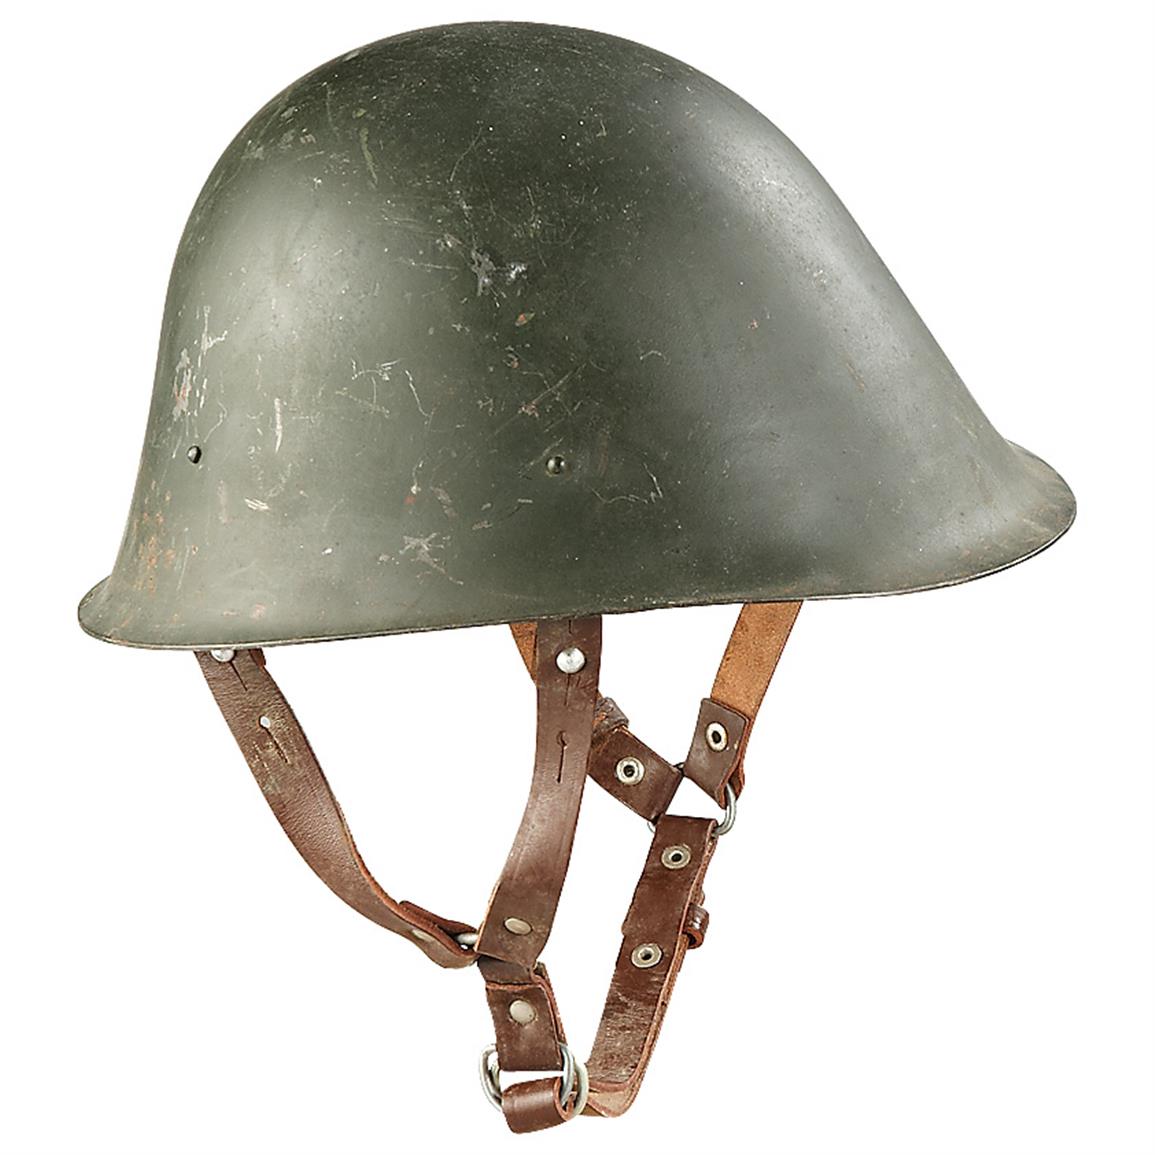 Used Romanian Military Surplus Steel Helmet, Olive Drab